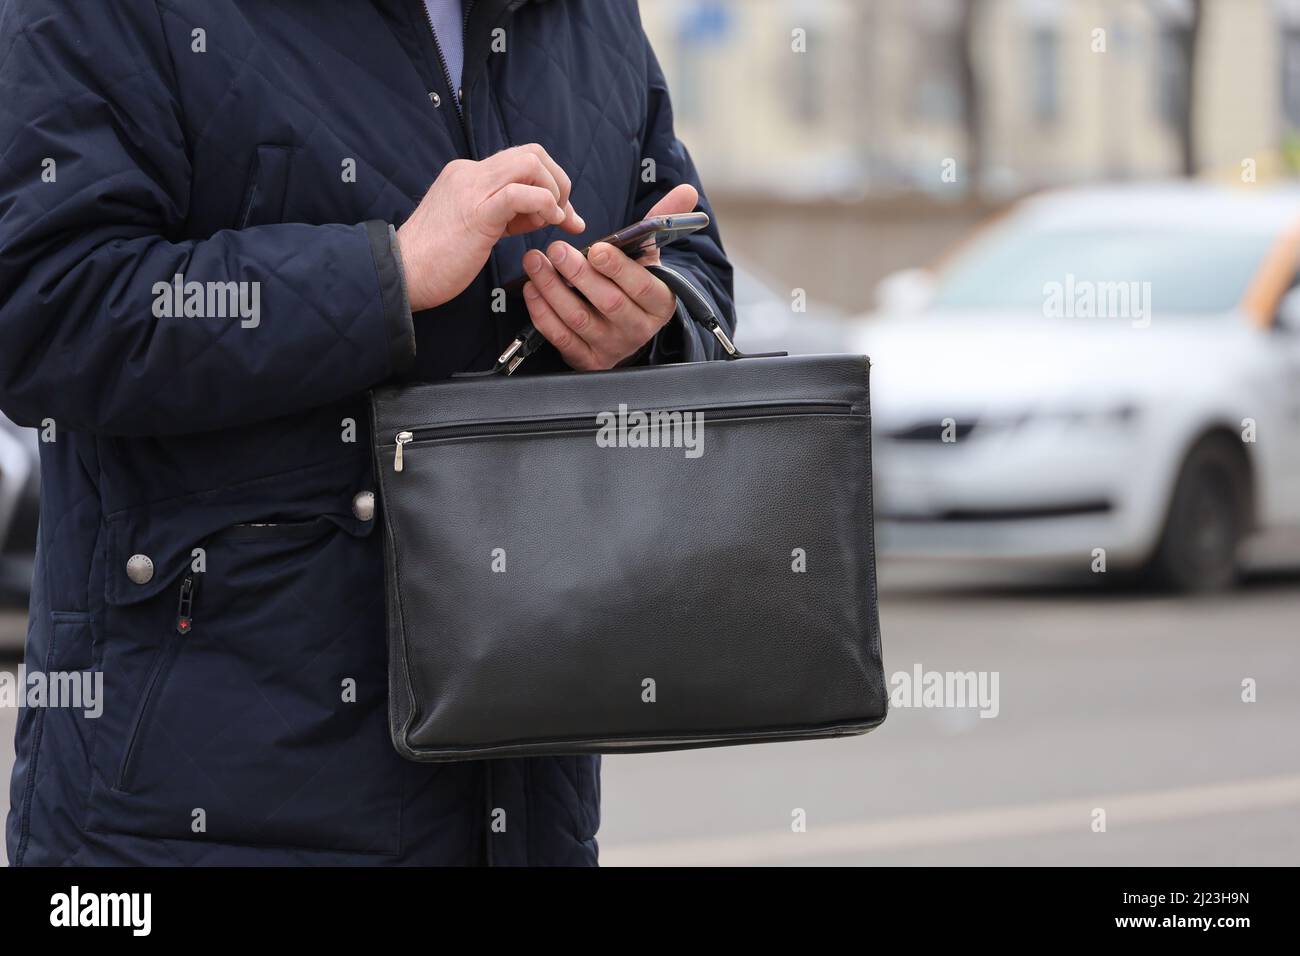 Uomo in cappotto in piedi con una borsa portadocumenti in pelle con smartphone in mano su una strada cittadina. Concetto di uomini d'affari, funzionari, dipendenti governativi Foto Stock